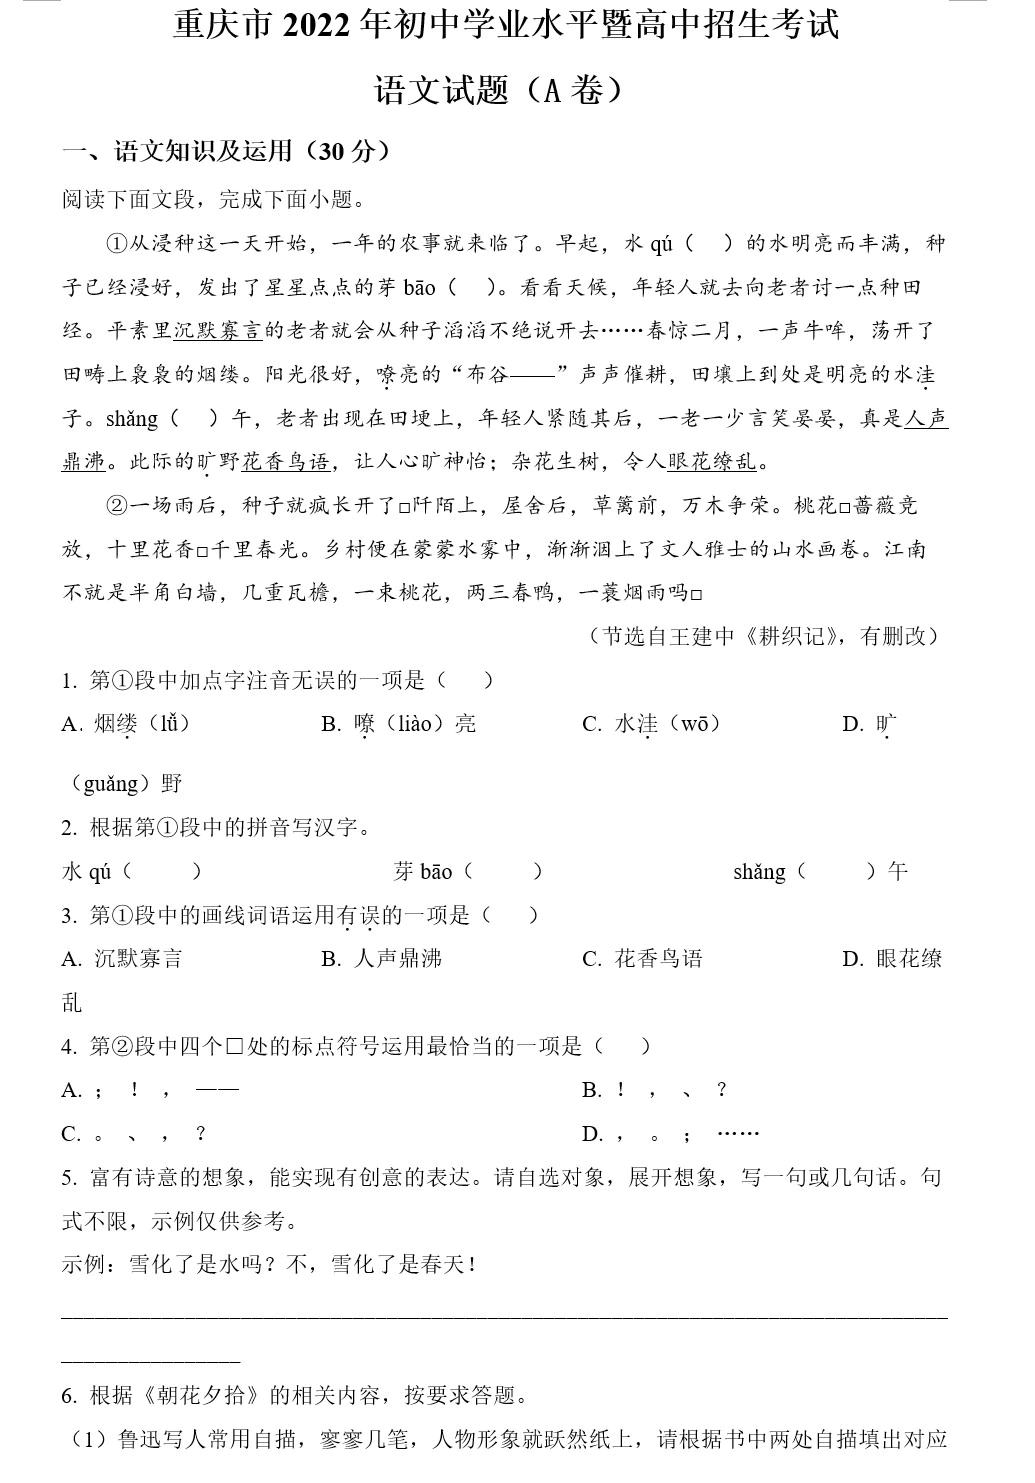 2022年重庆市中考语文真题(A卷+B卷,共2套)(原卷版+解析版)(doc格式下载)[s1867]